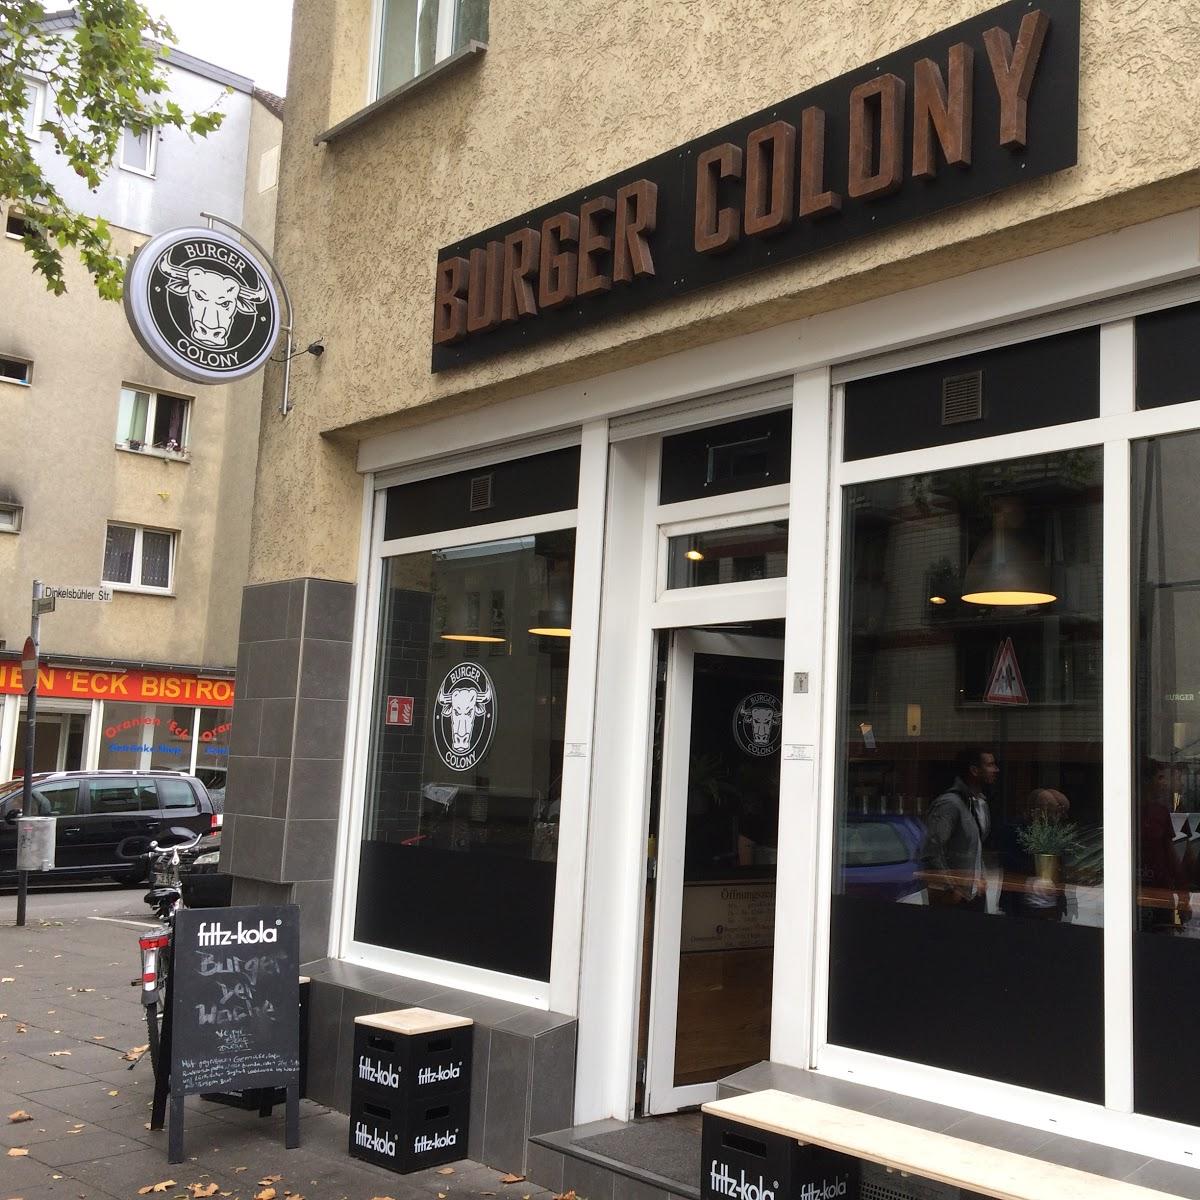 Restaurant "Burger Colony Köln" in Köln